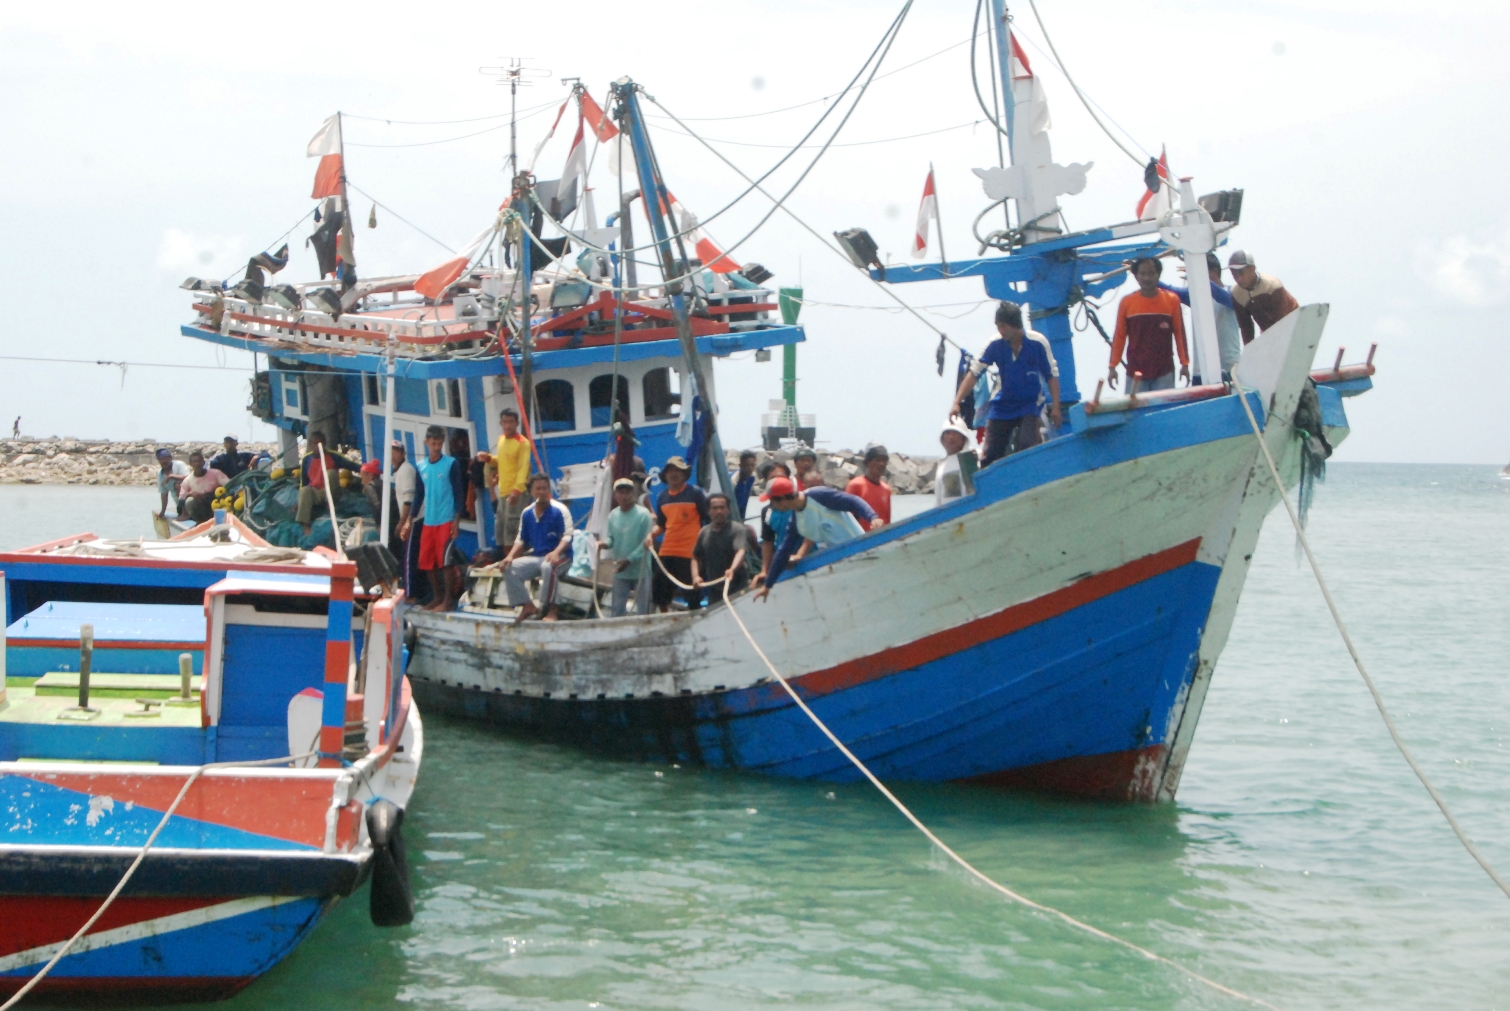 Nelayan bersiap dalam kapal yang sedang merapat di Pelabuhan Perikanan Sadeng, Gunung Kidul, Yogyakarta pada awal Desember 2015. Nelayan merupakan profesi yang riskan akan kecelakaan dan kematian, sehingga pemerintah berupaya memberikan asuransi nelayan. Foto : Jay Fajar